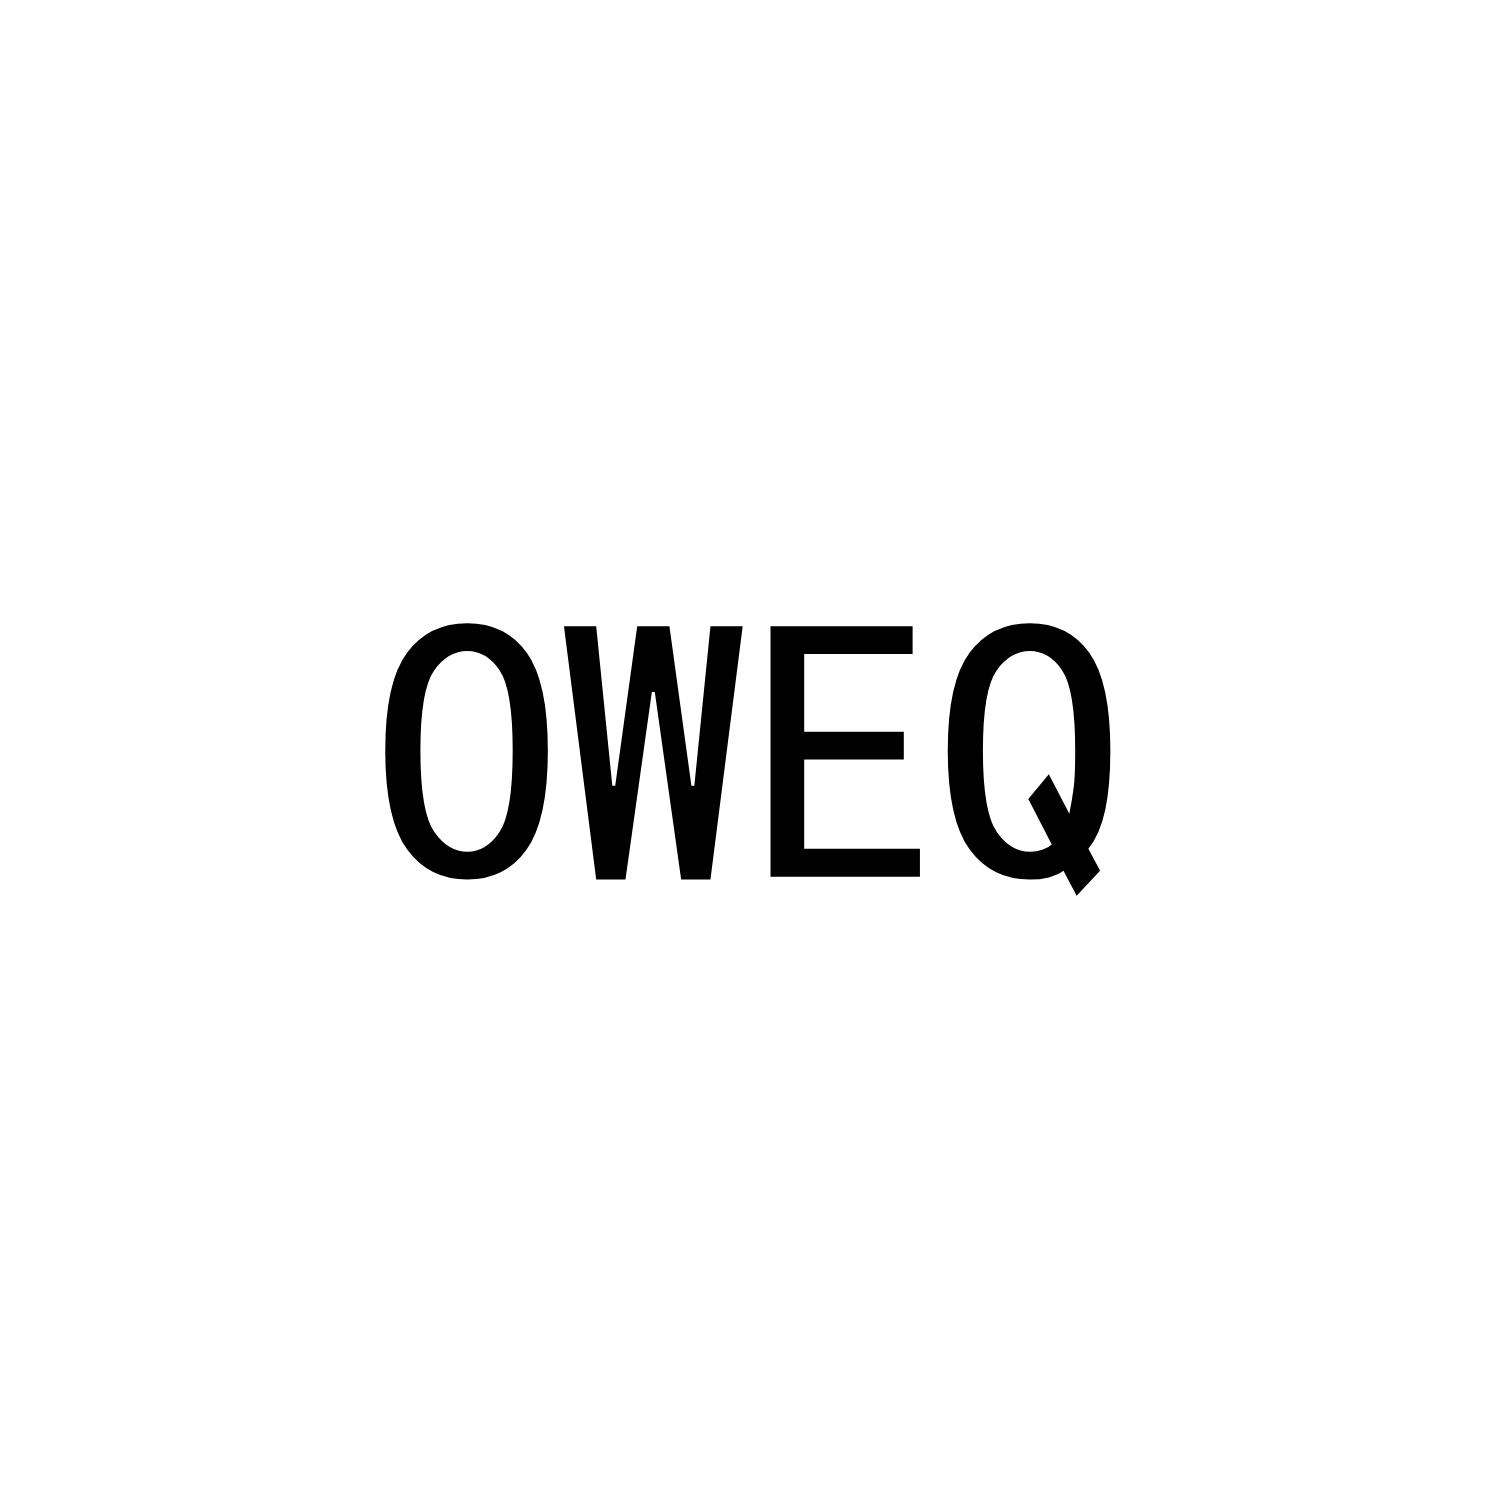 OWEQ